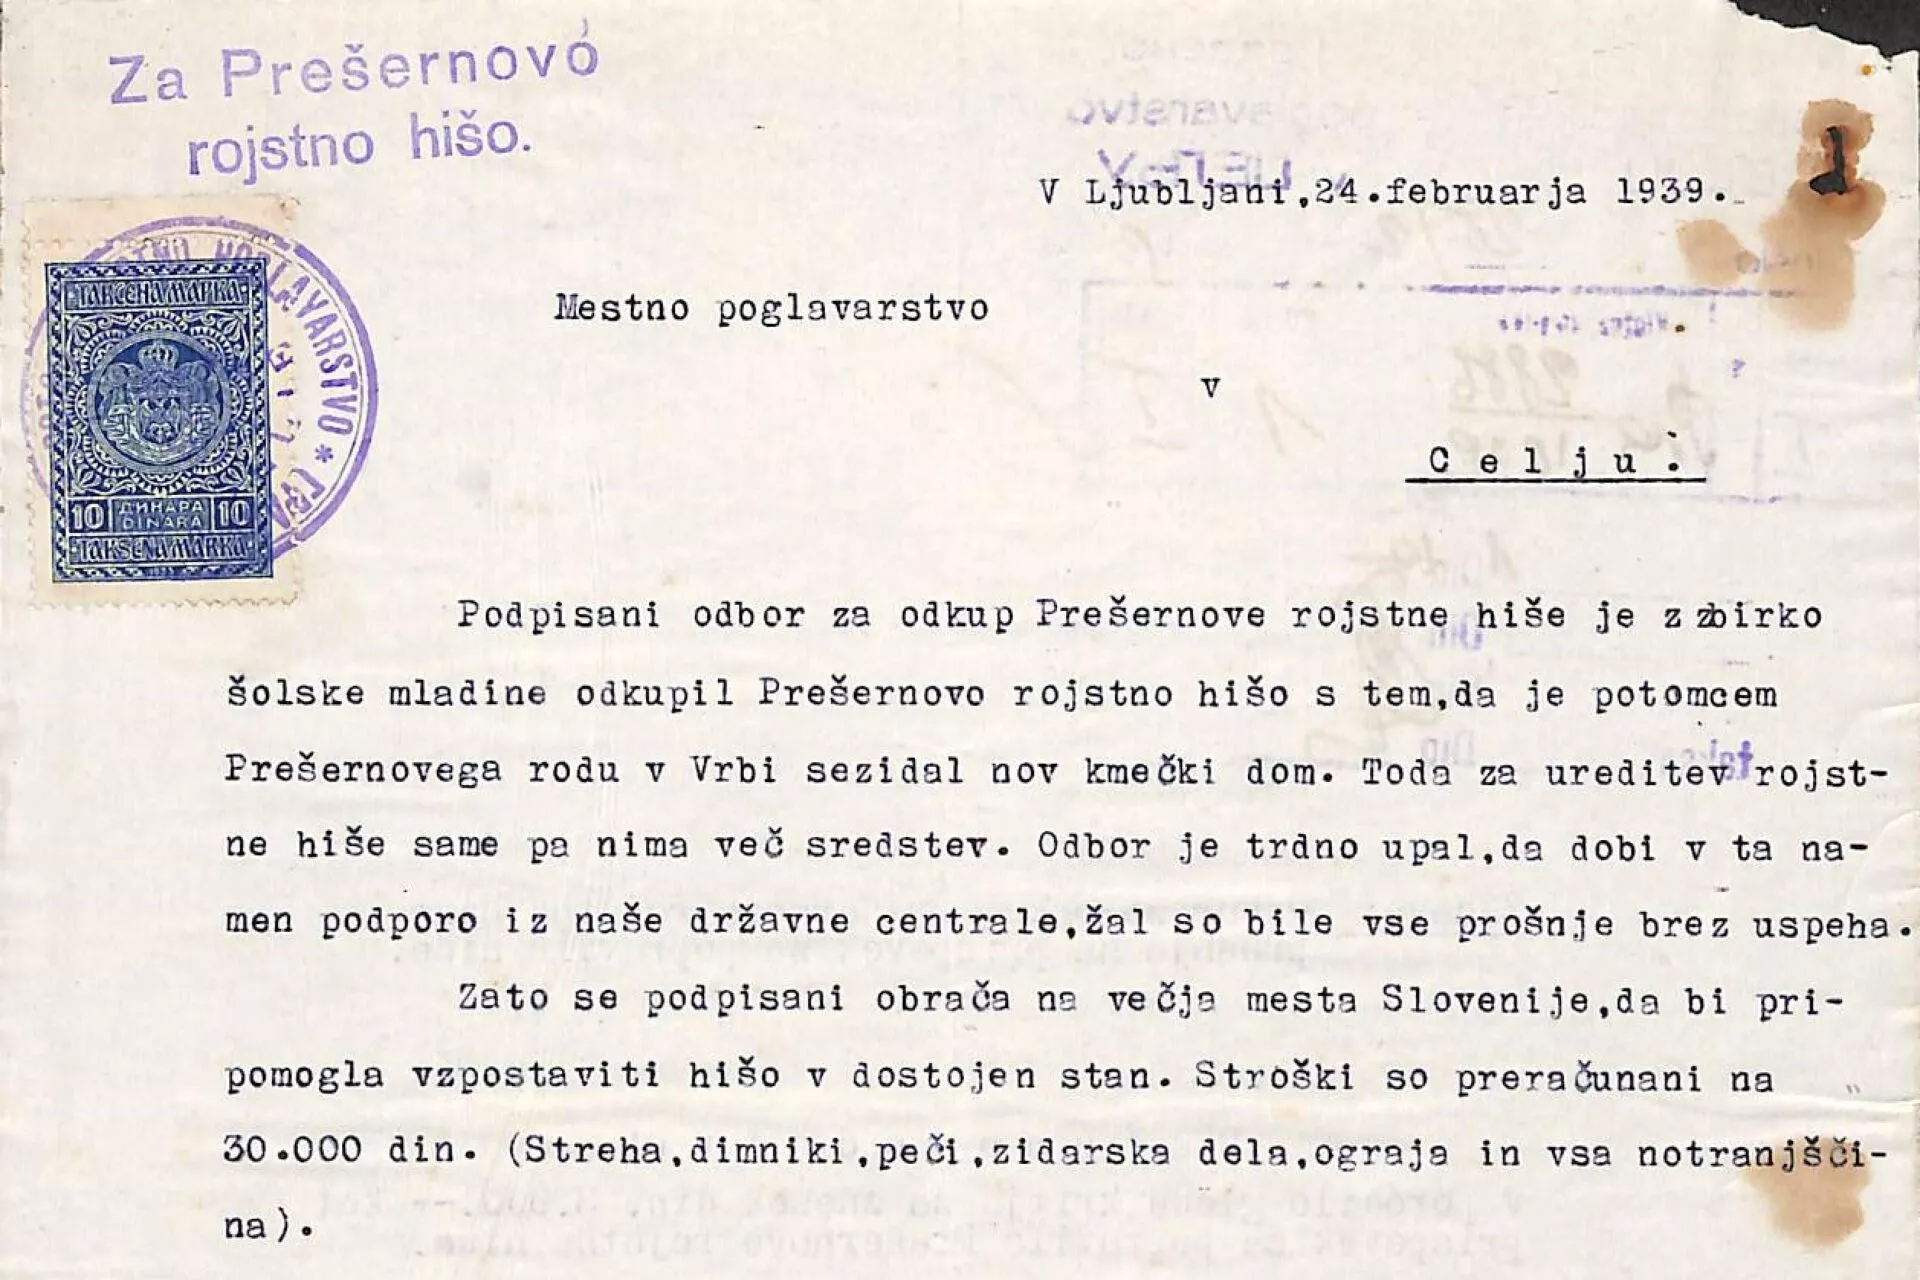 Dopis iz 24. februarja 1939 na mestno poglavarstvo v Celju za prispevek v znesku 3.000 din pri obnovi Prešernove hiše